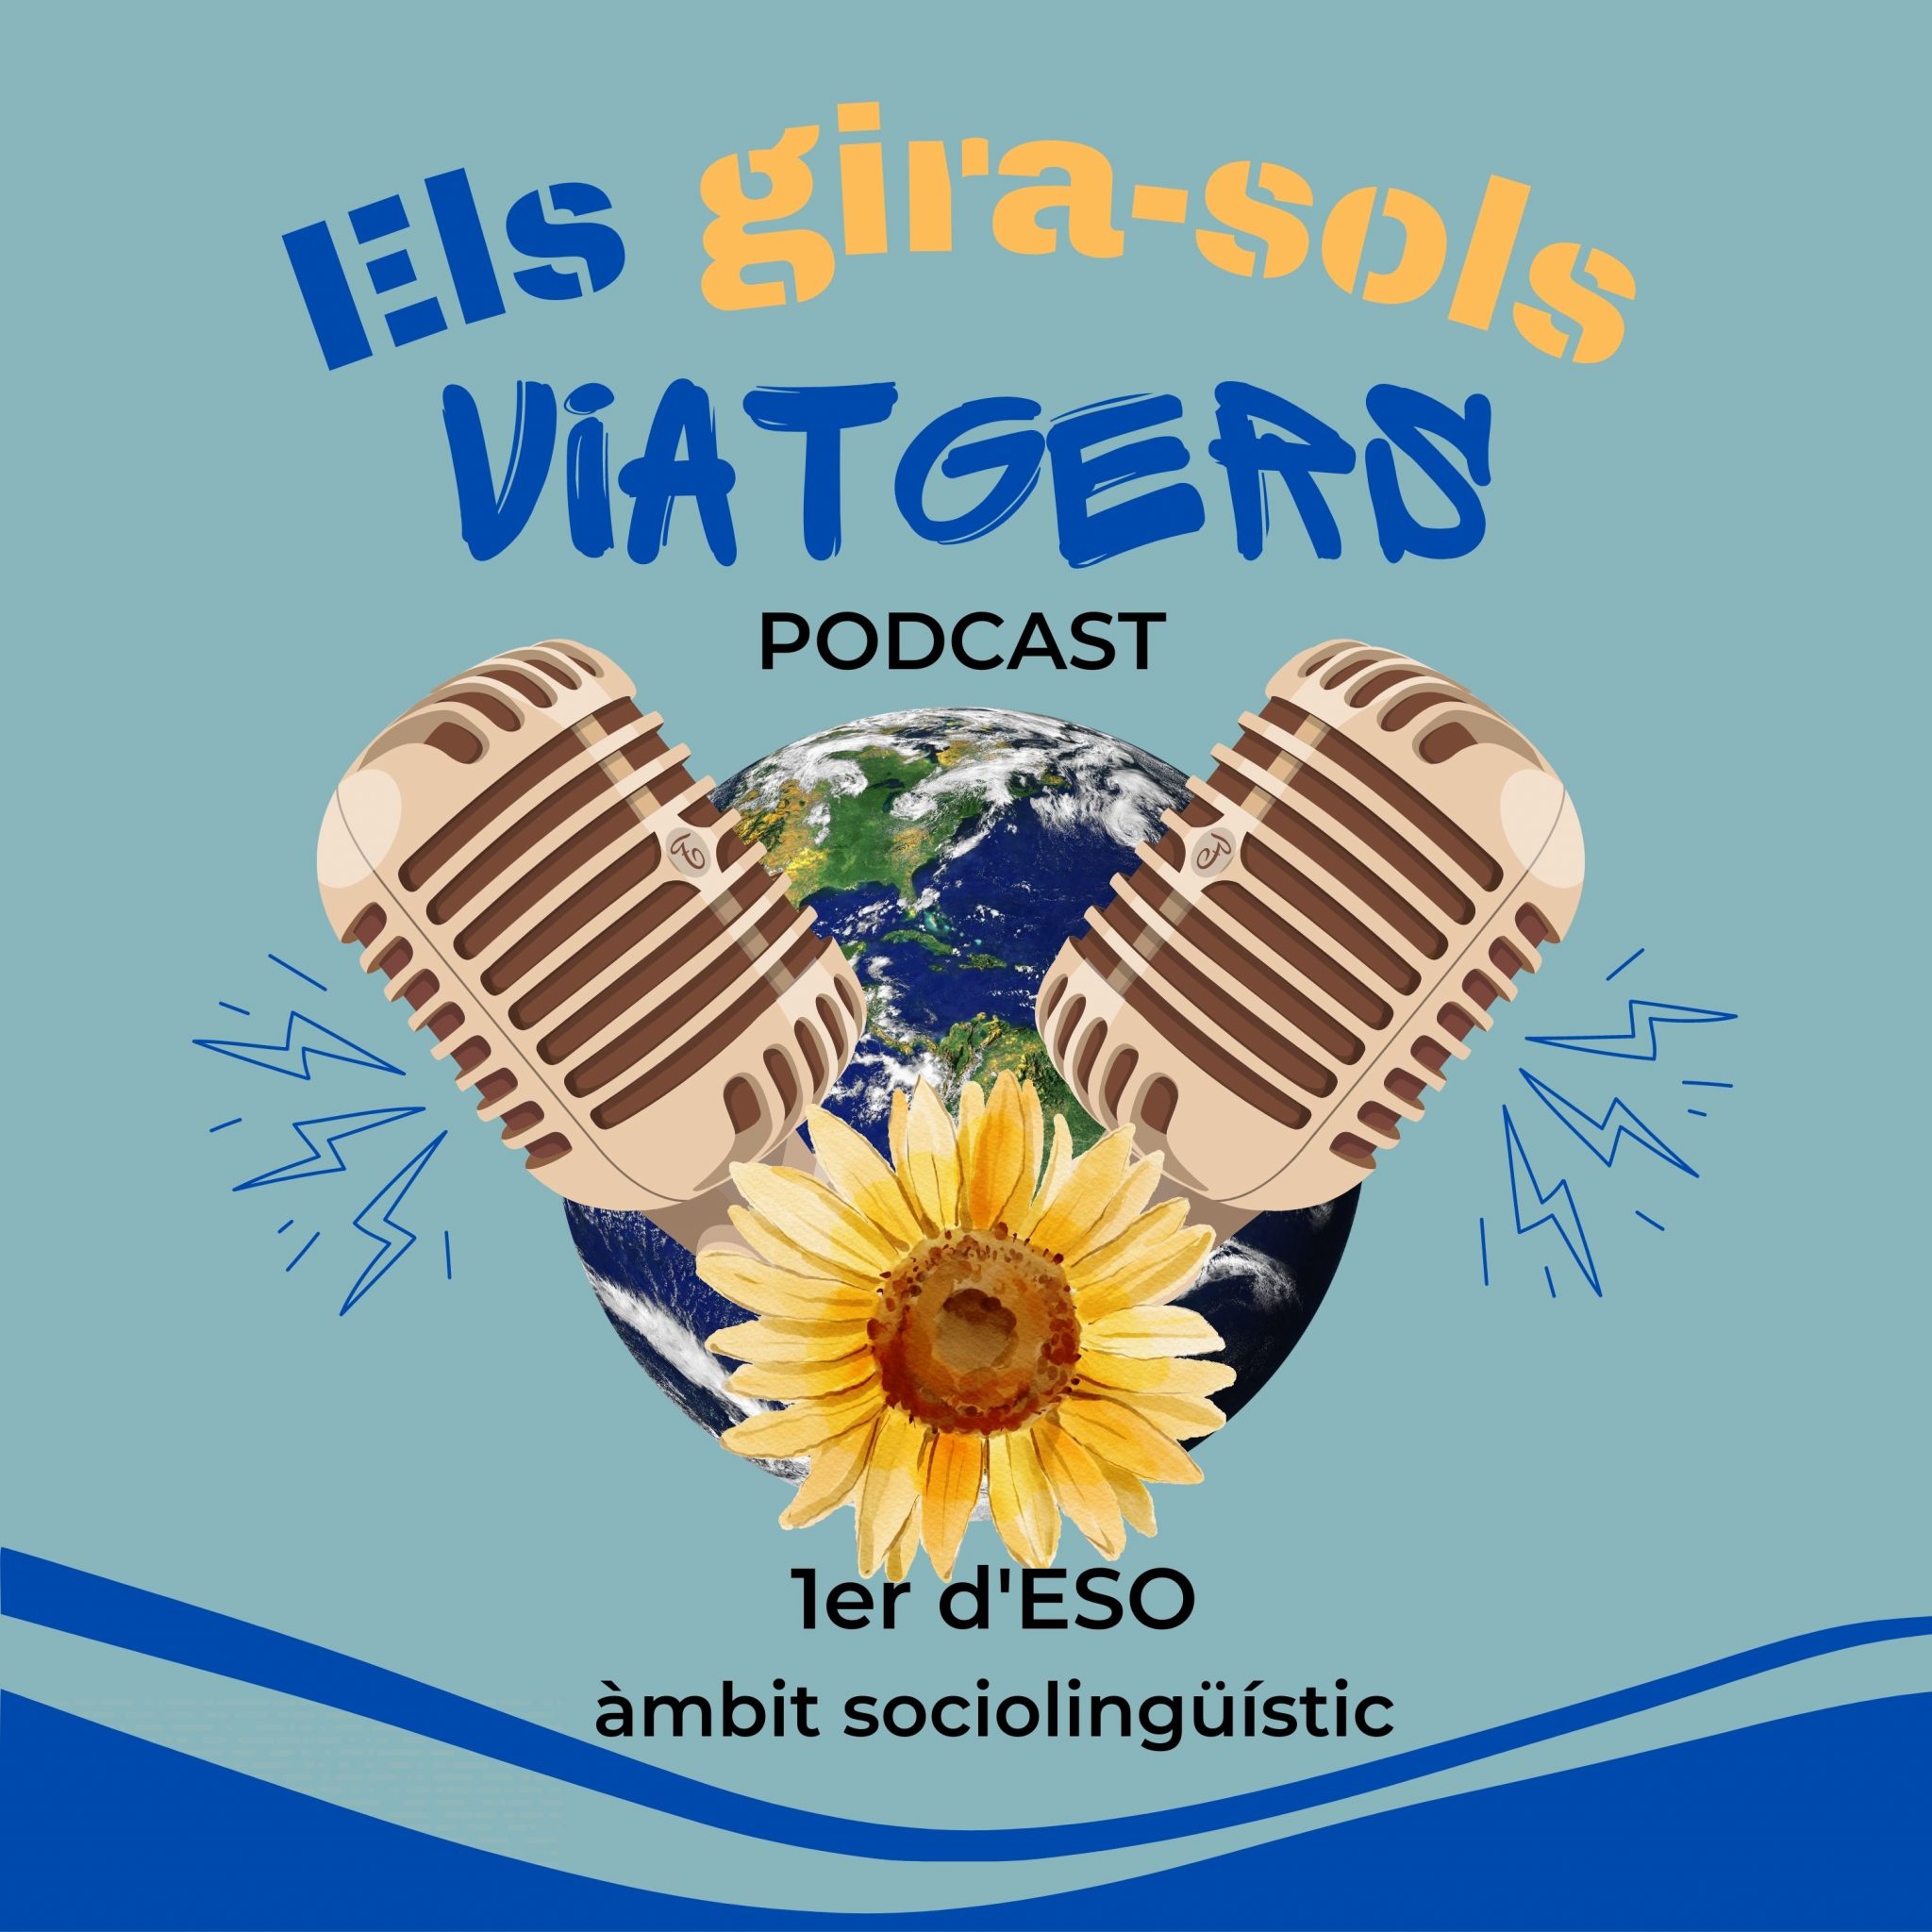 LOGO ELS GIRA-SOLS VIATGERS